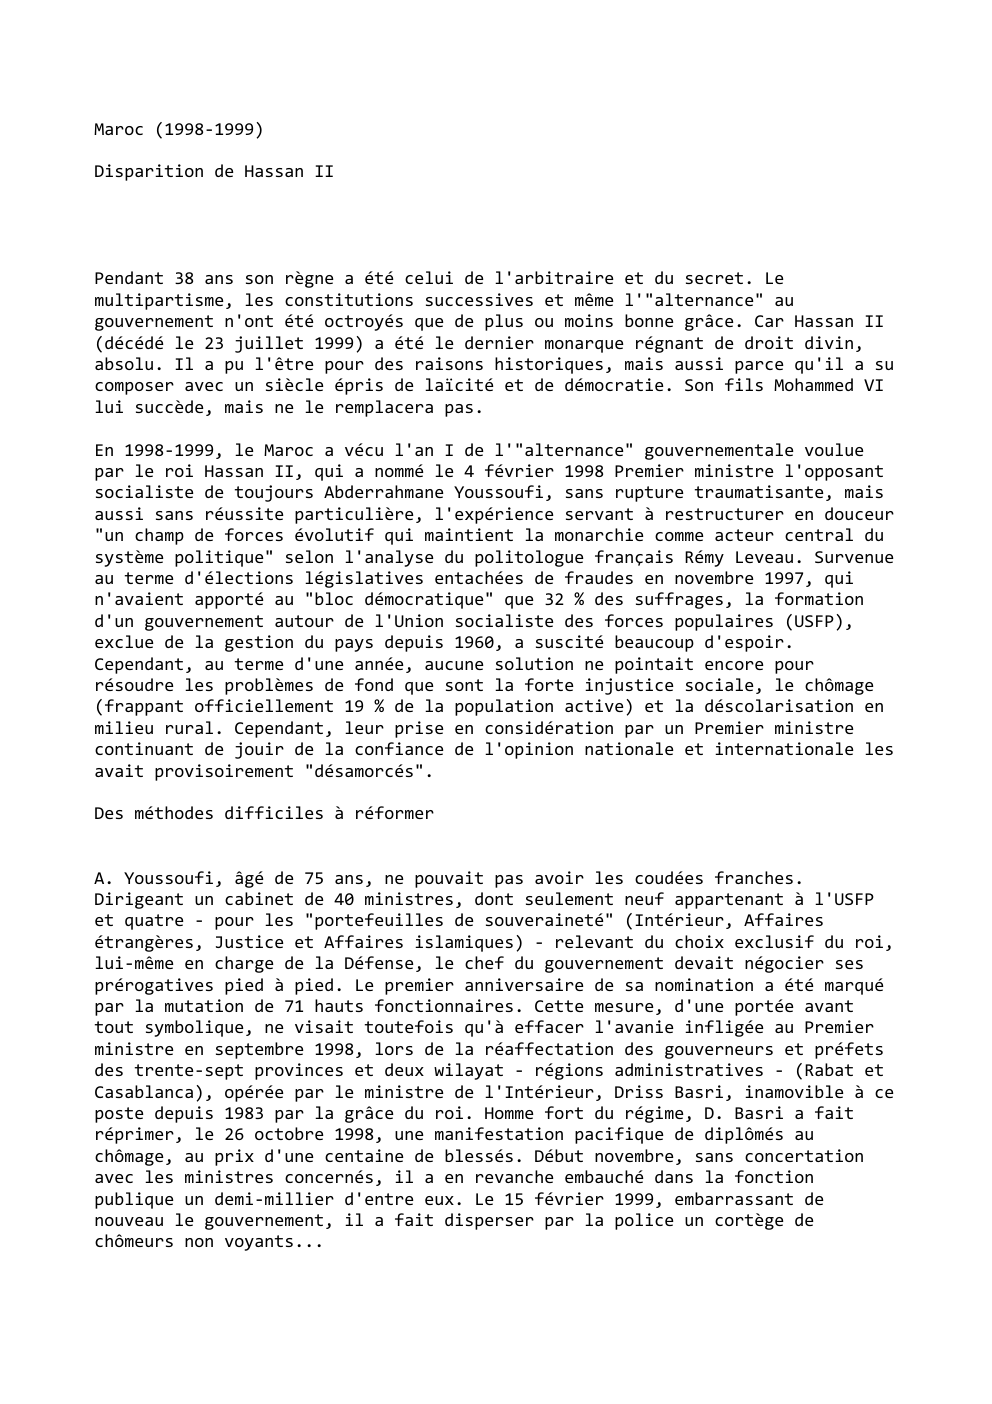 Prévisualisation du document Maroc (1998-1999)
Disparition de Hassan II

Pendant 38 ans son règne a été celui de l'arbitraire et du secret. Le...